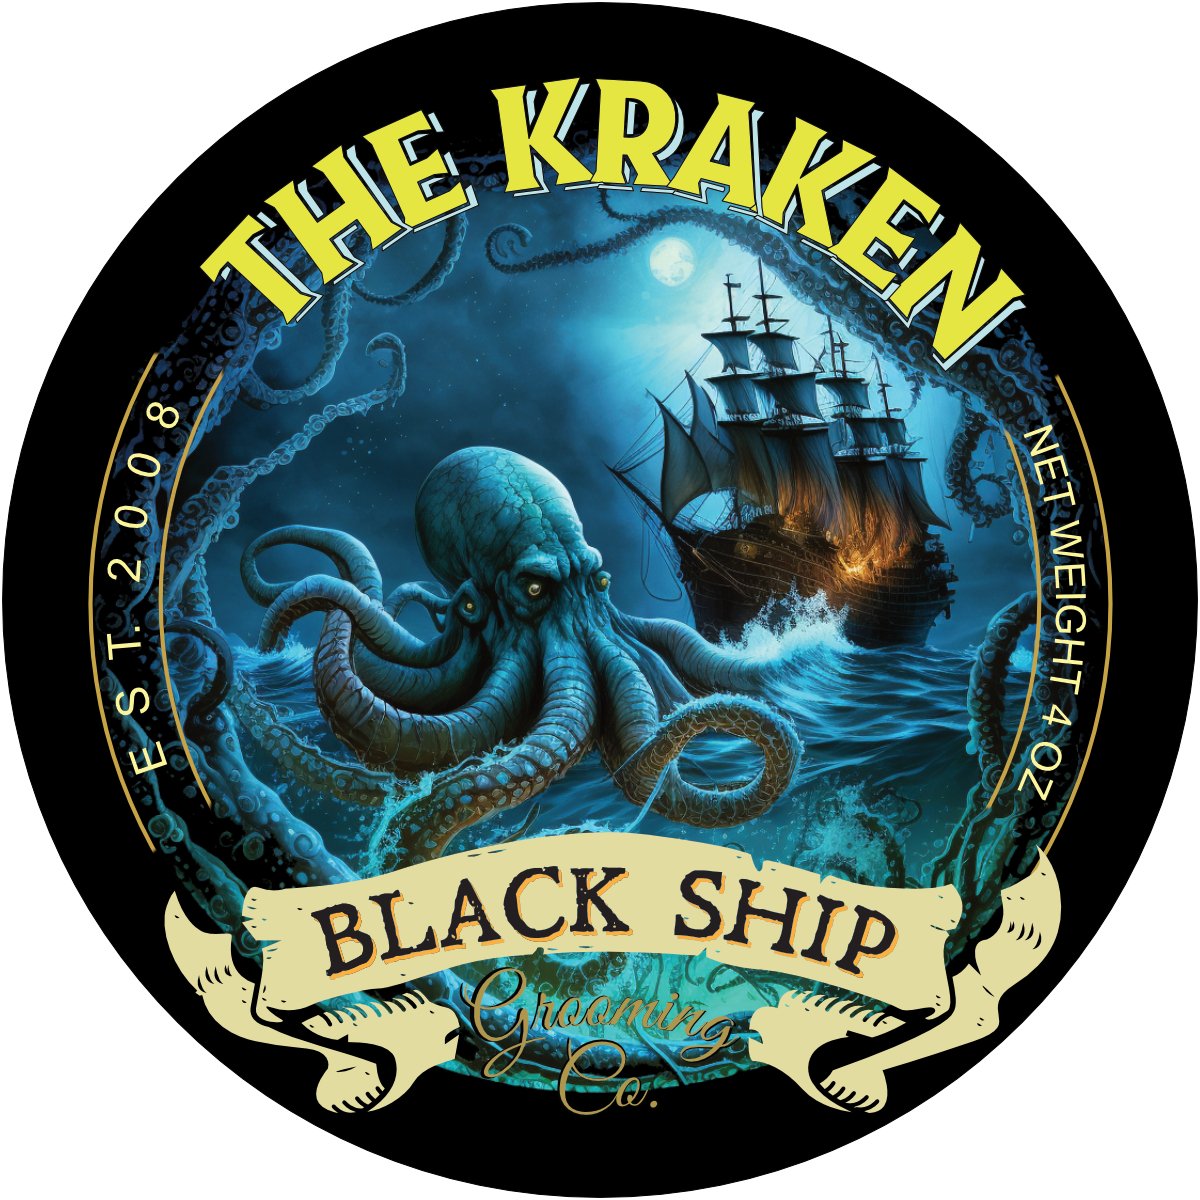 Kraken After Shave Splash - Black Ship Grooming Co.